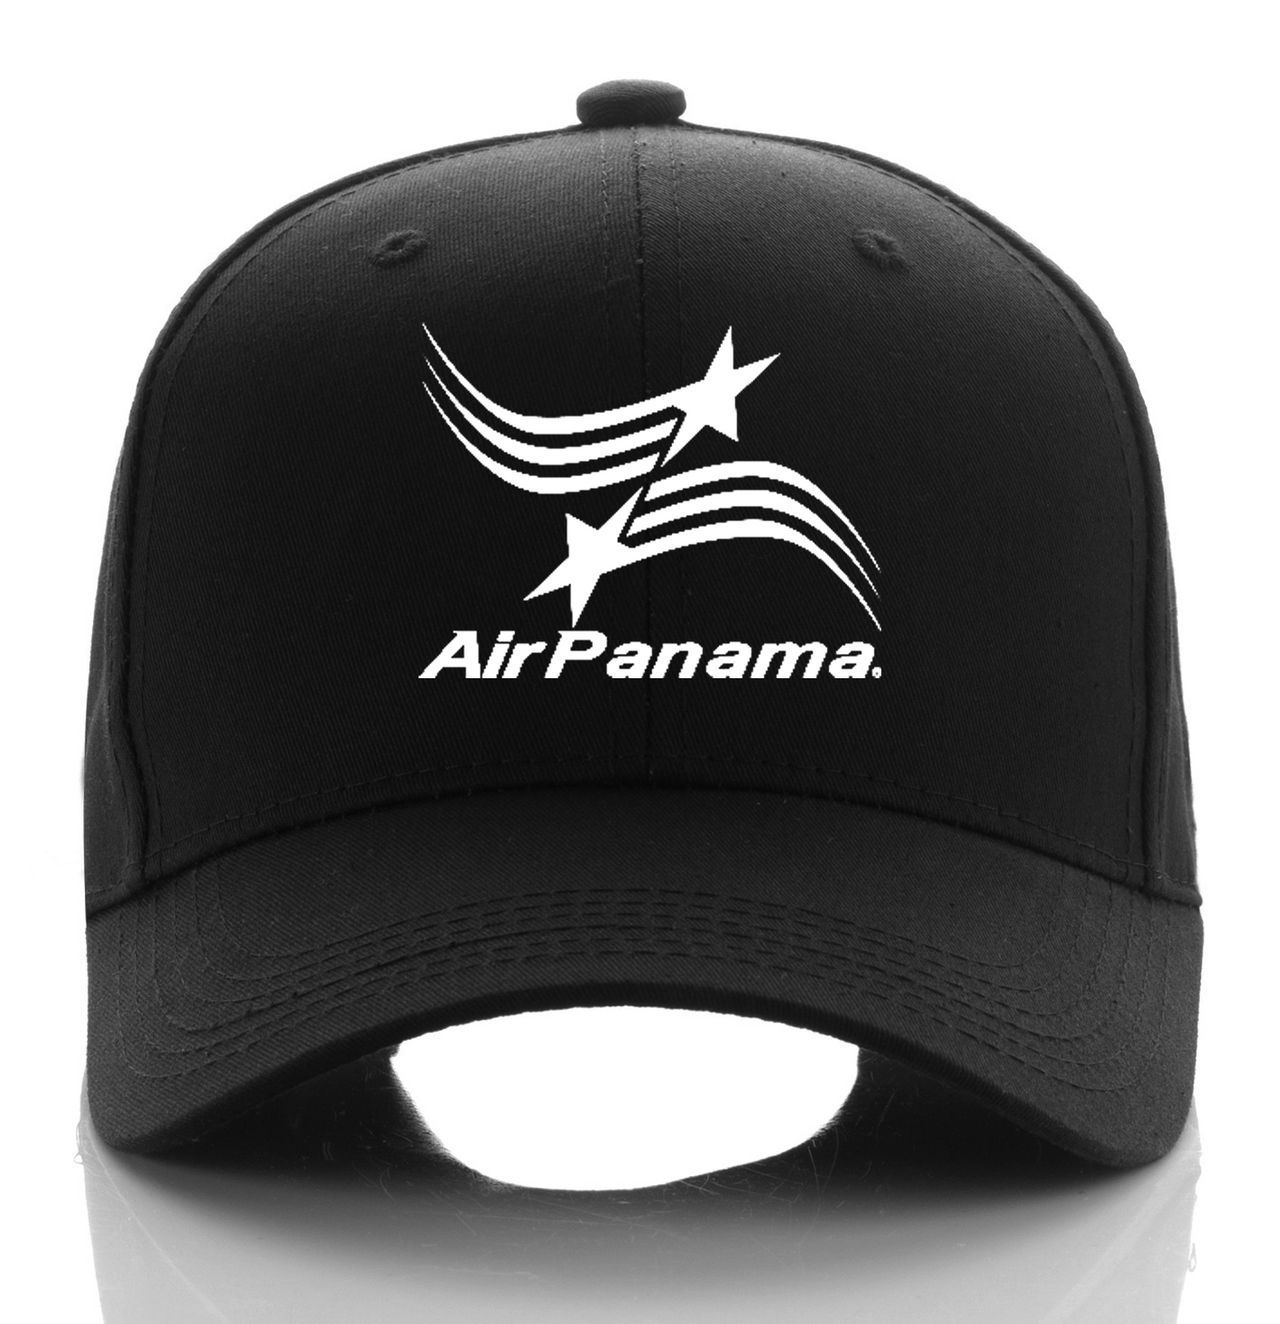 PANAMA AIRLINE DESIGNED CAP